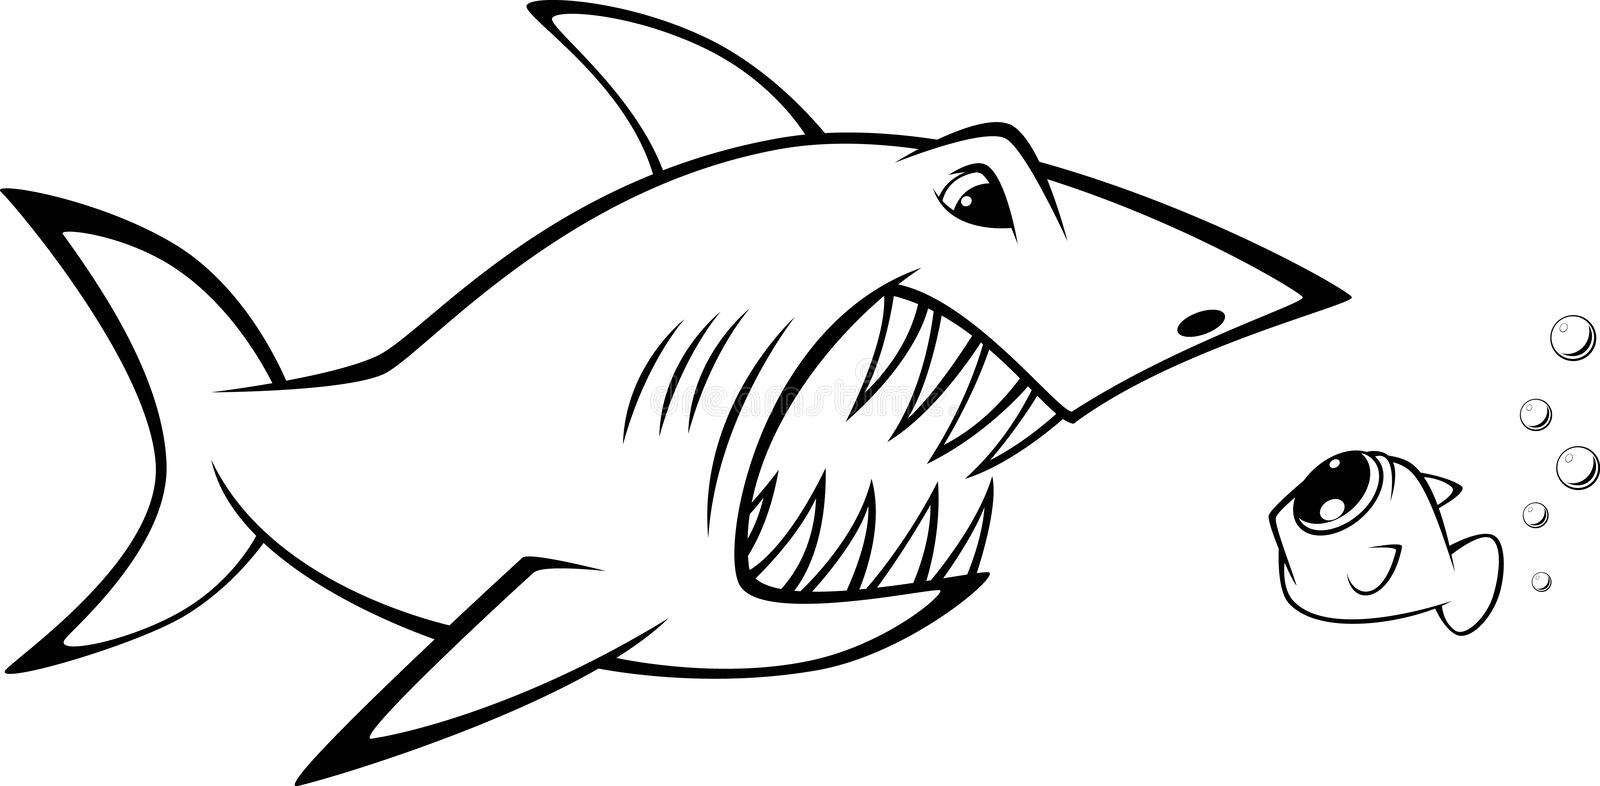 Легкие рисунки рыб для срисовки и акул